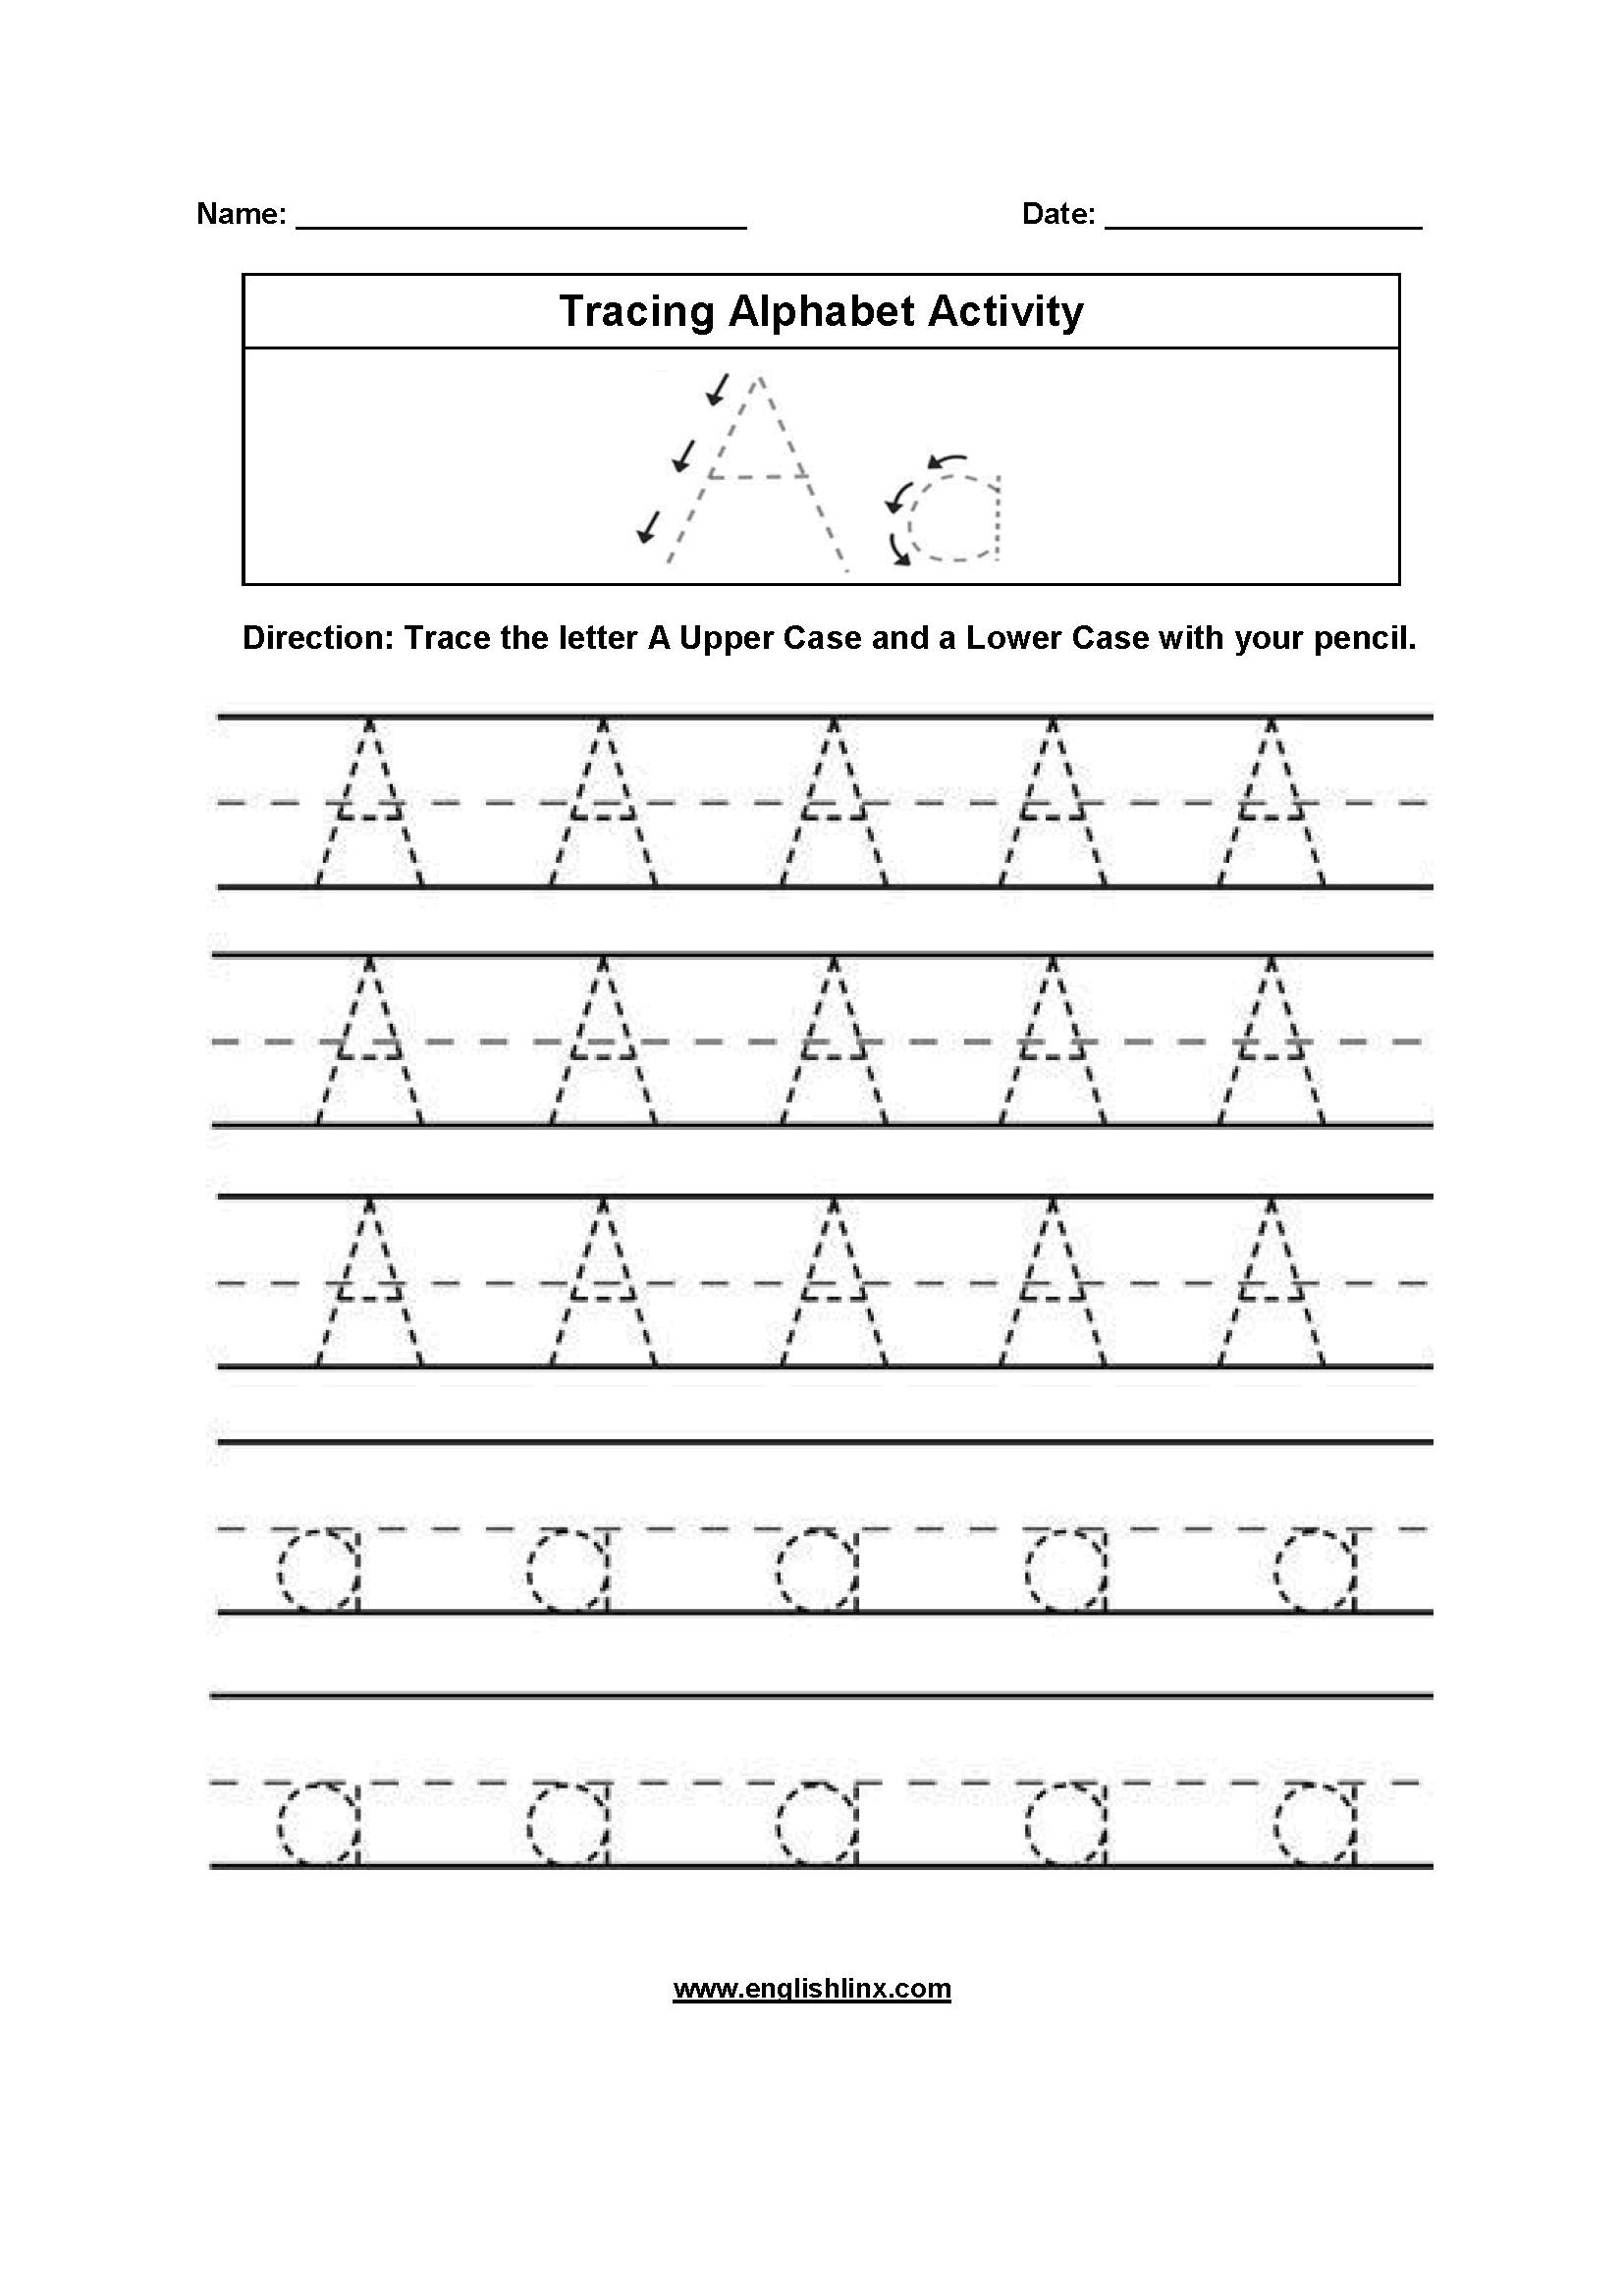 Worksheet ~ Alphabet Tracing Worksheets Uppercase Lowercase within Alphabet Tracing A